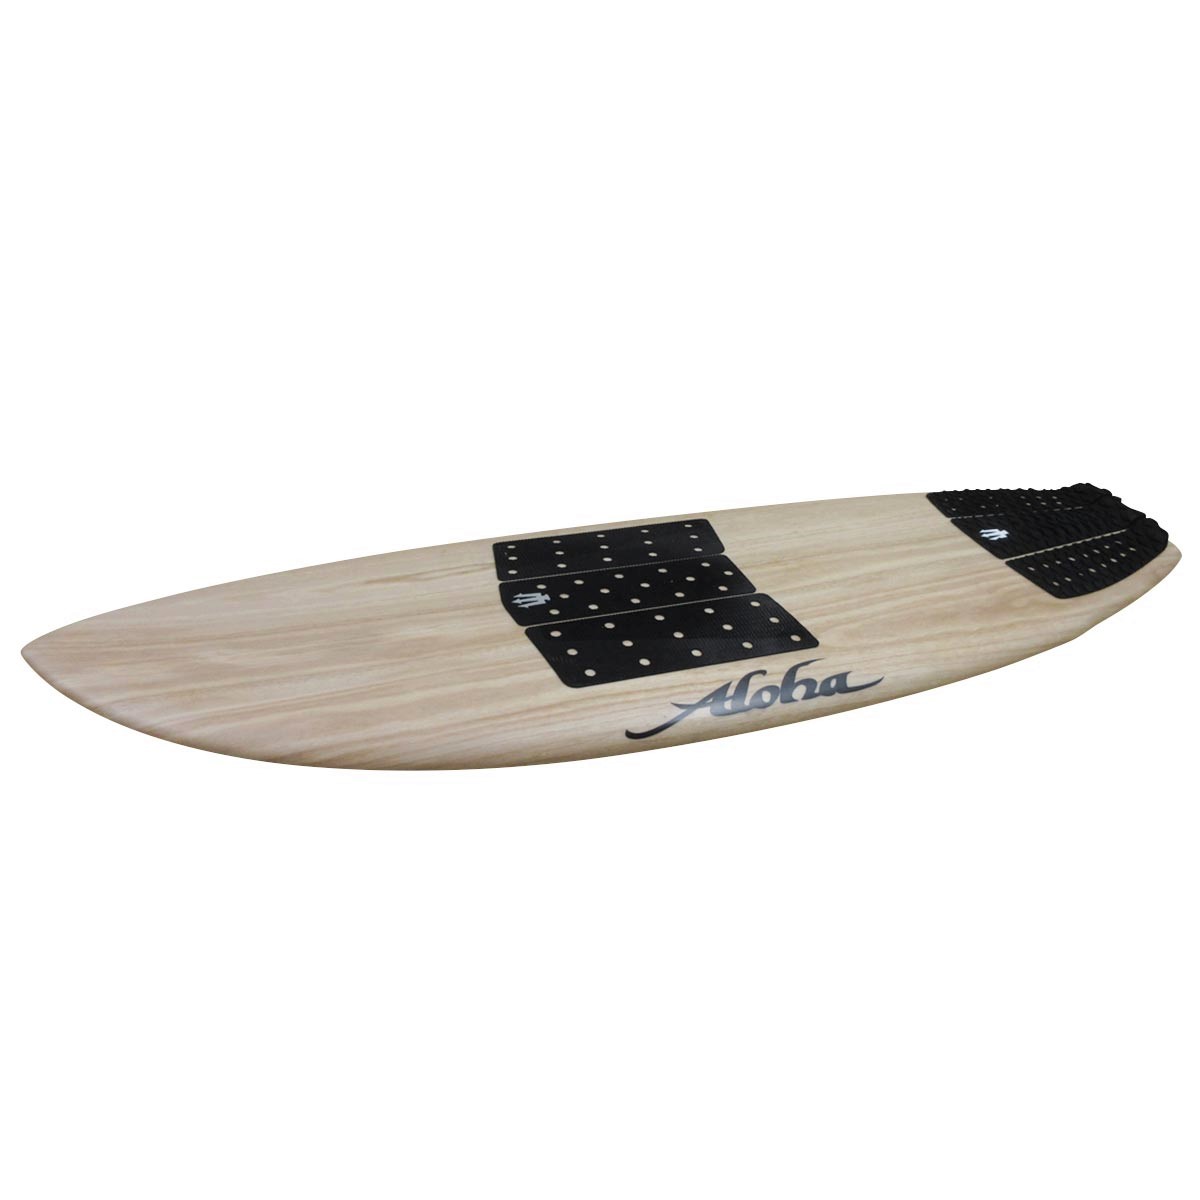 Aloha surfboard black panda ecoskin 5’6”